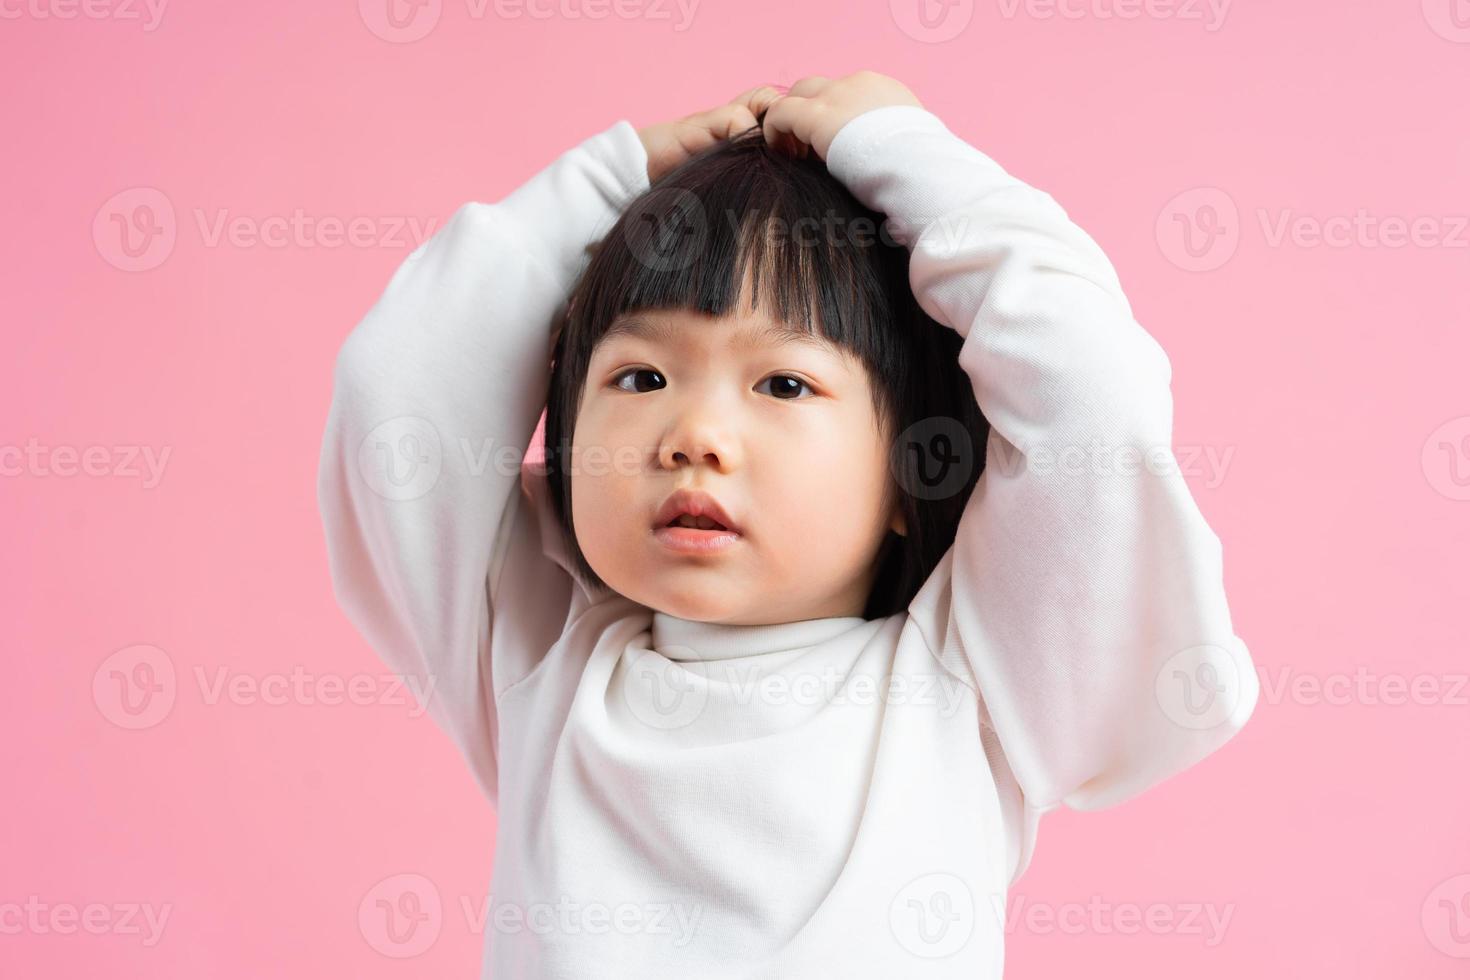 härlig baby flicka porträtt, isolerad på rosa bakgrund foto